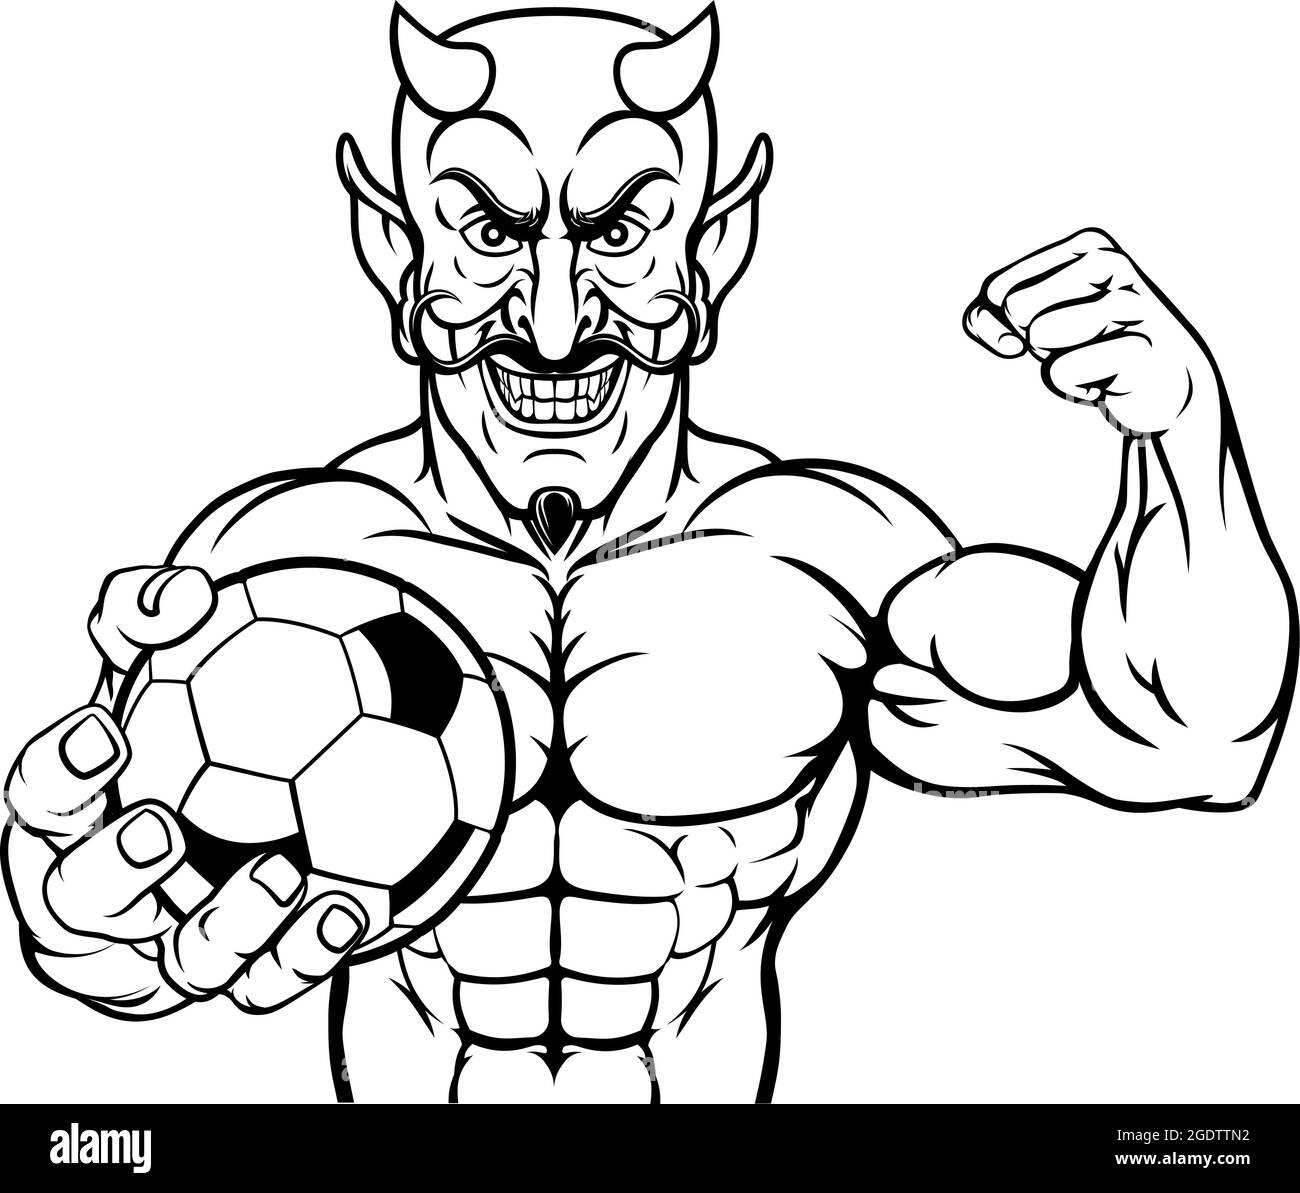 Devil Soccer Football Sports Mascot Holding Ball Stock Vector